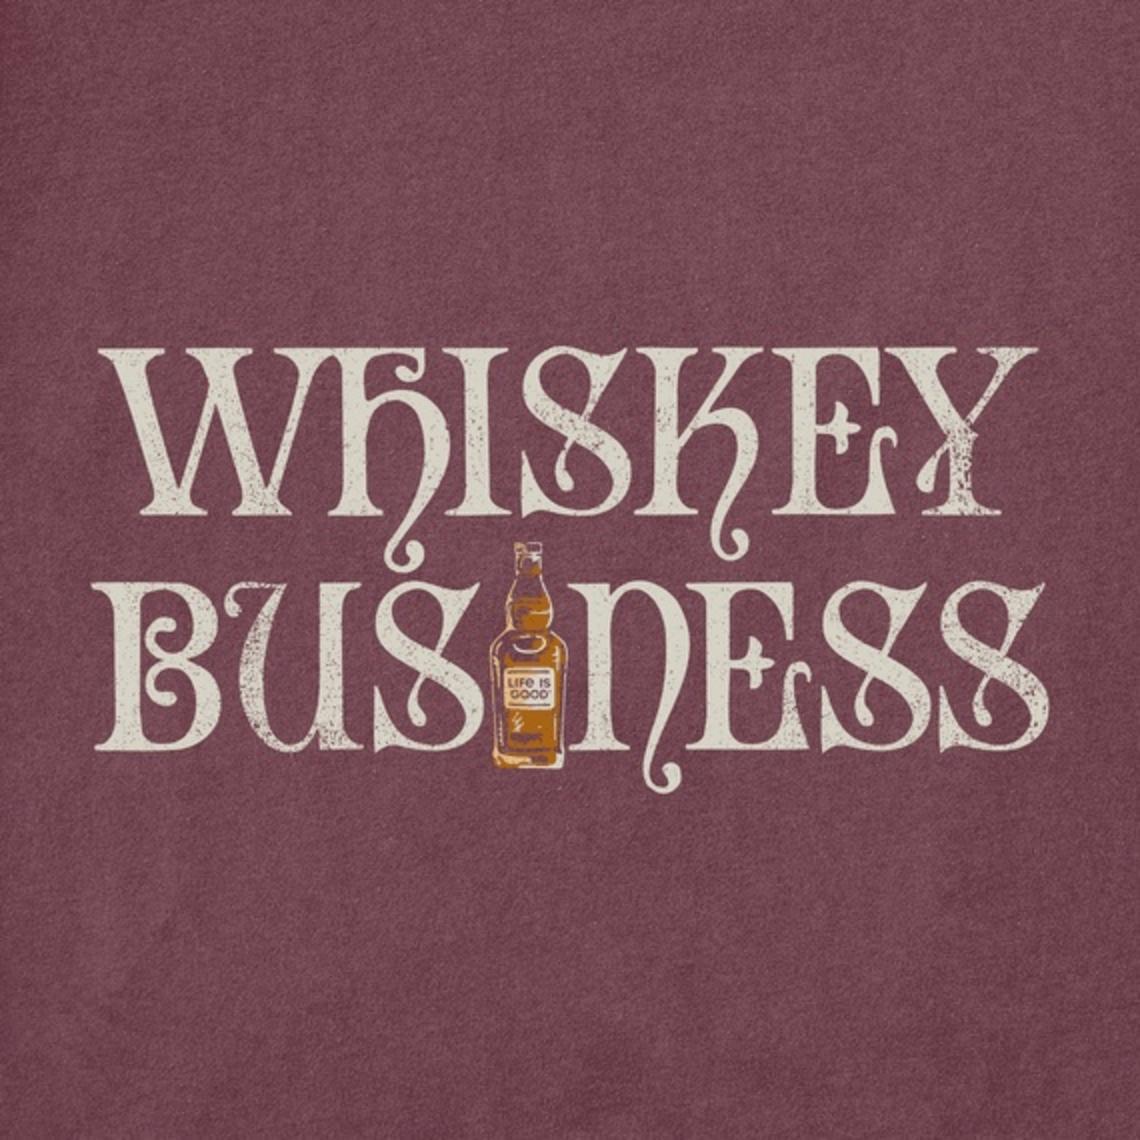 Men's Whiskey Business Bottle Short Sleeve Tee